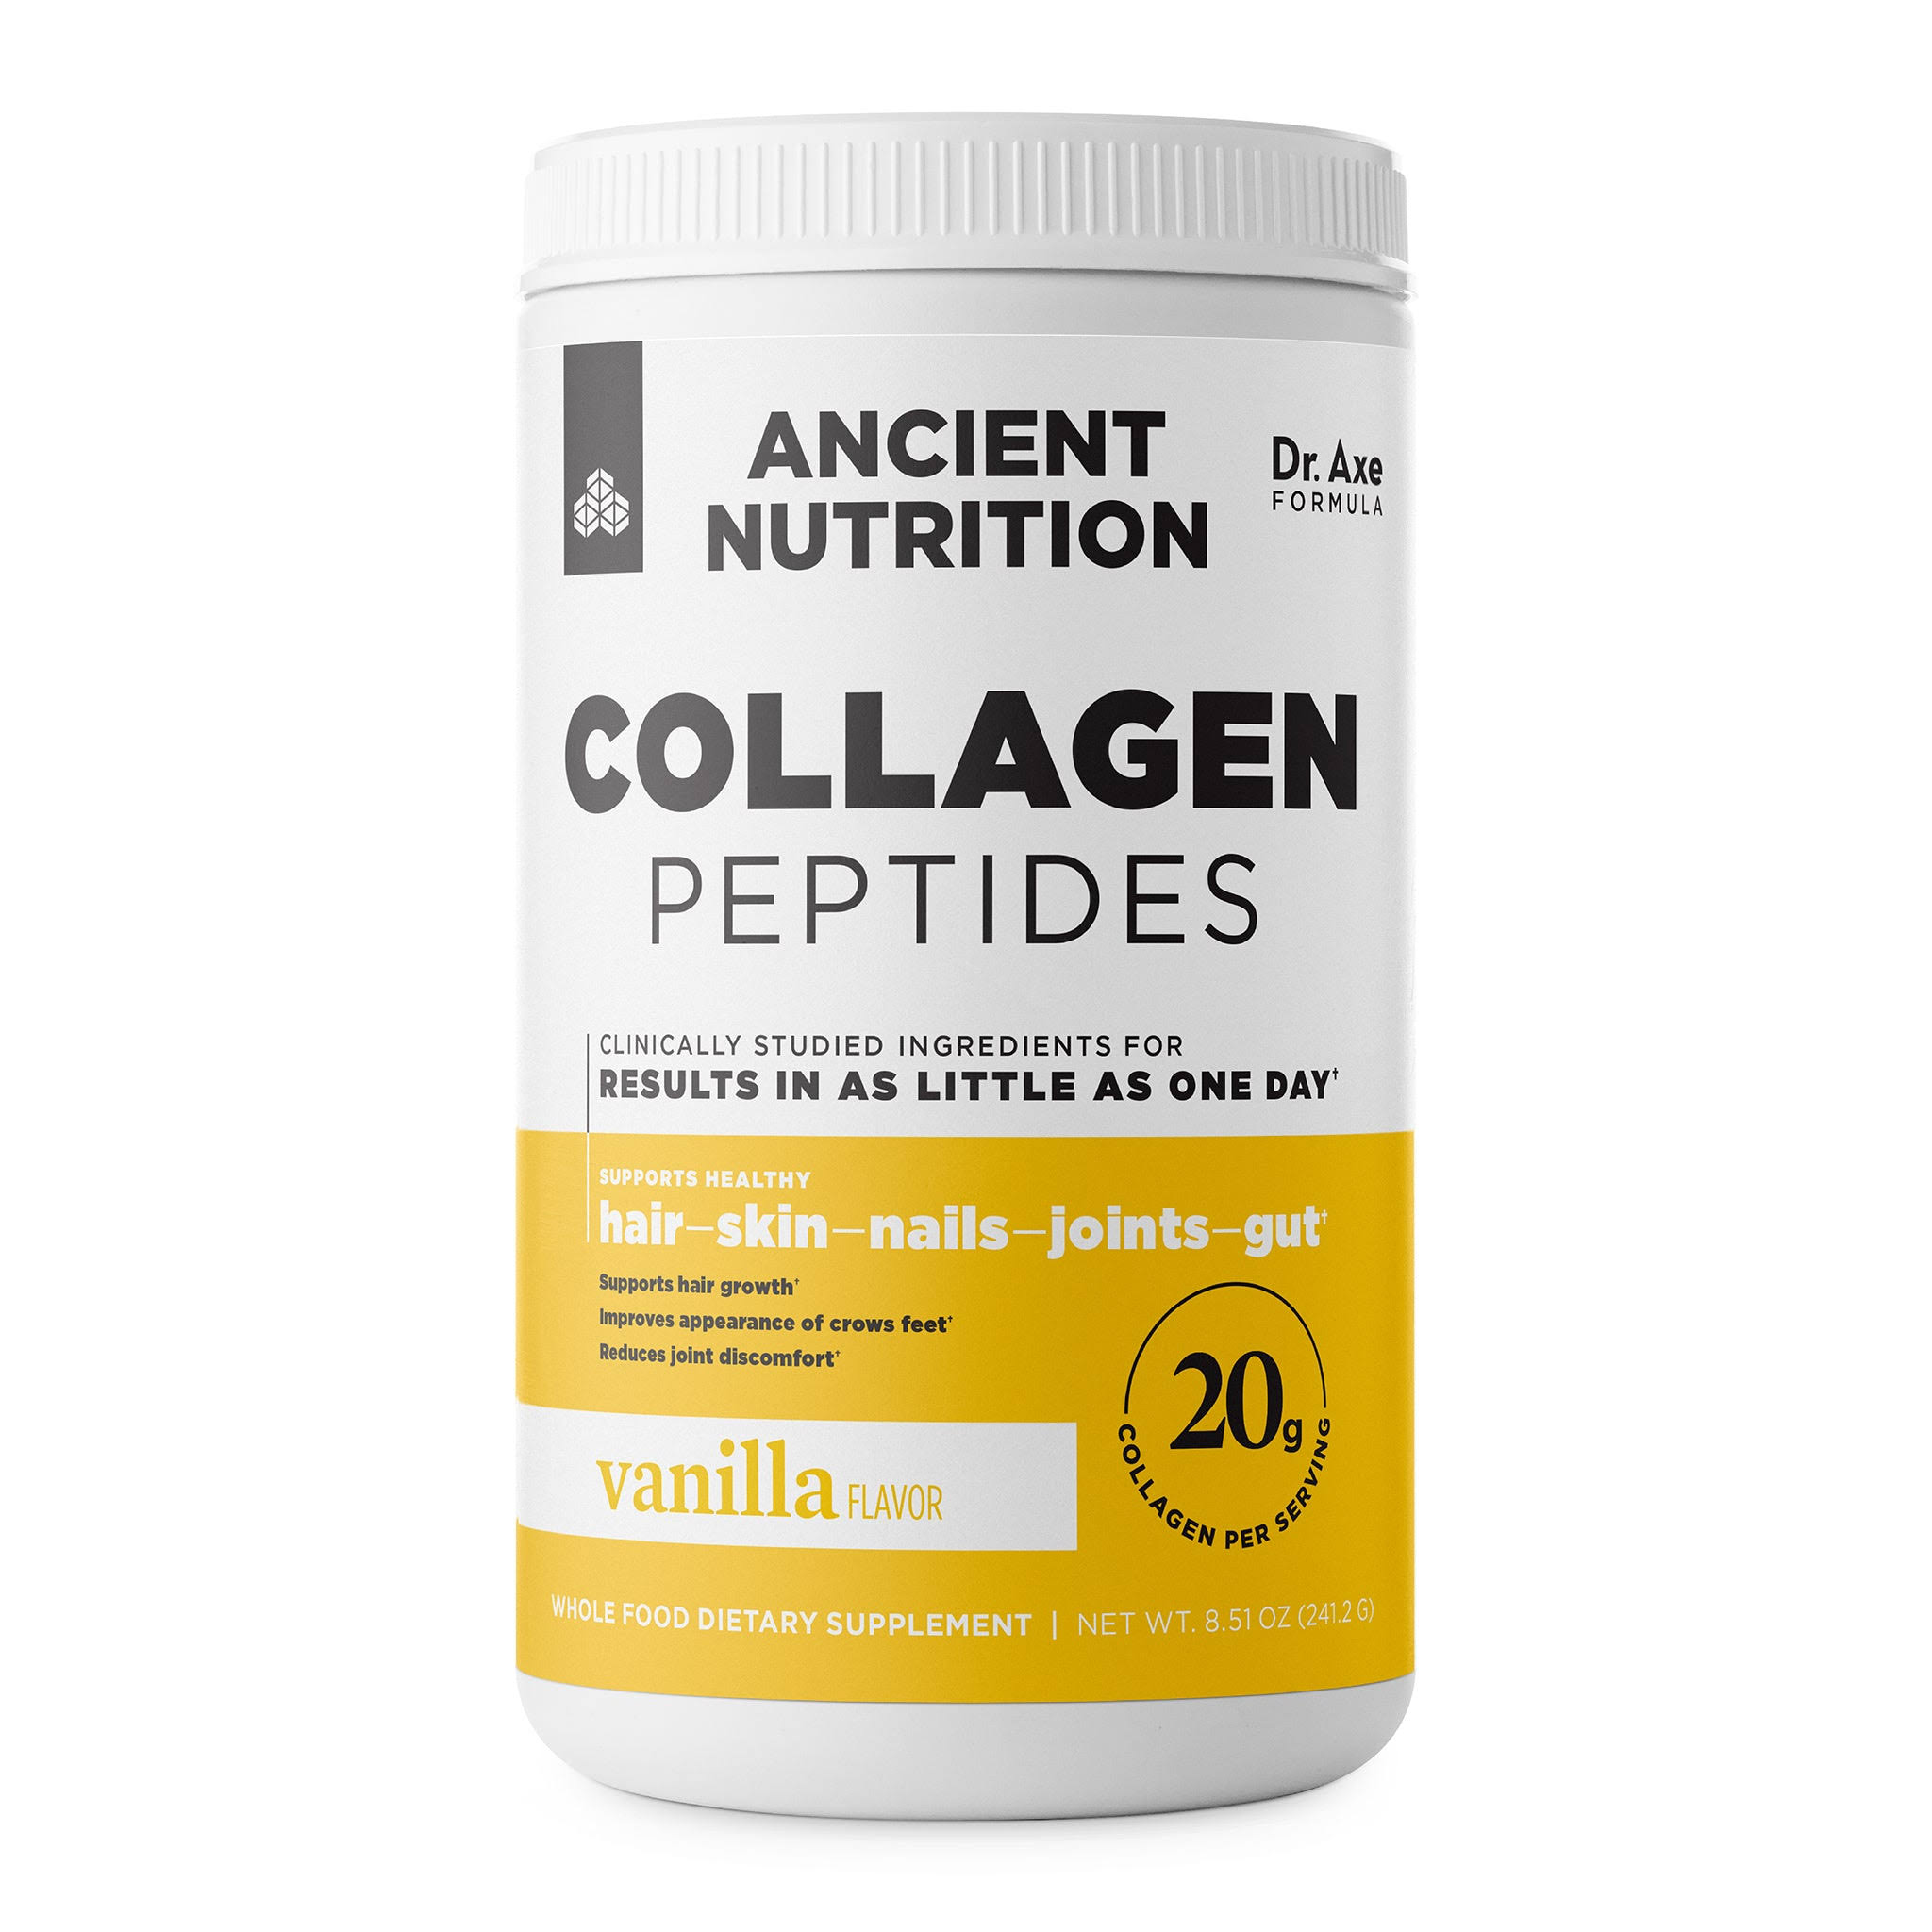 Ancient nutrition collagen peptides powder, vanilla, 8.5 oz